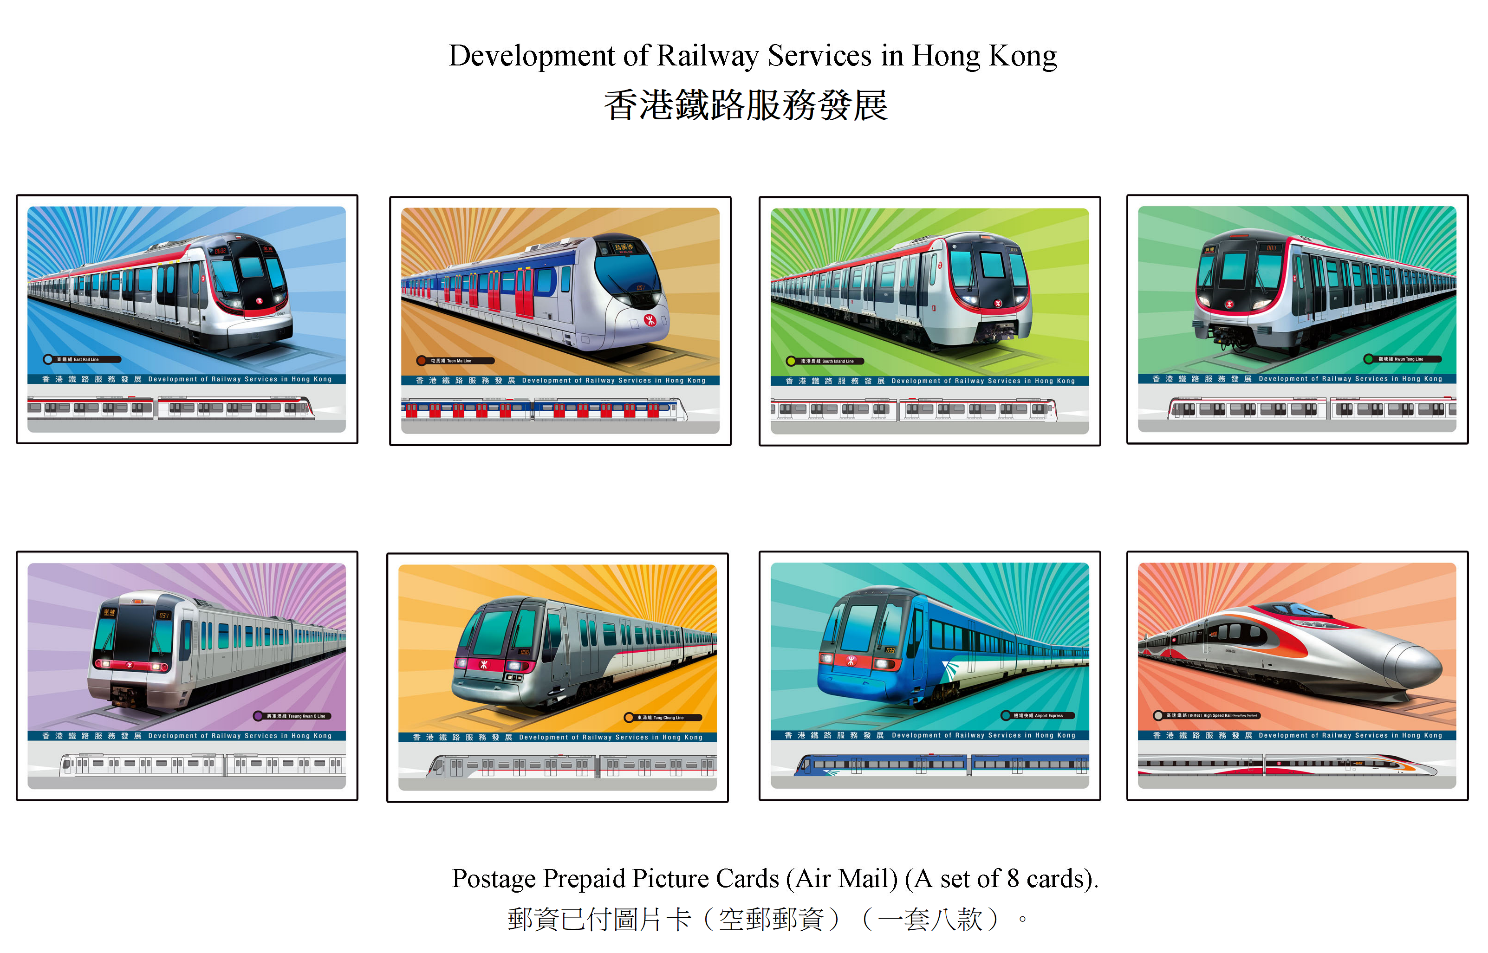 香港邮政十一月二十三日（星期四）发行以「香港铁路服务发展」为题的特别邮票及相关集邮品。图示邮资已付图片卡（空邮邮资）。